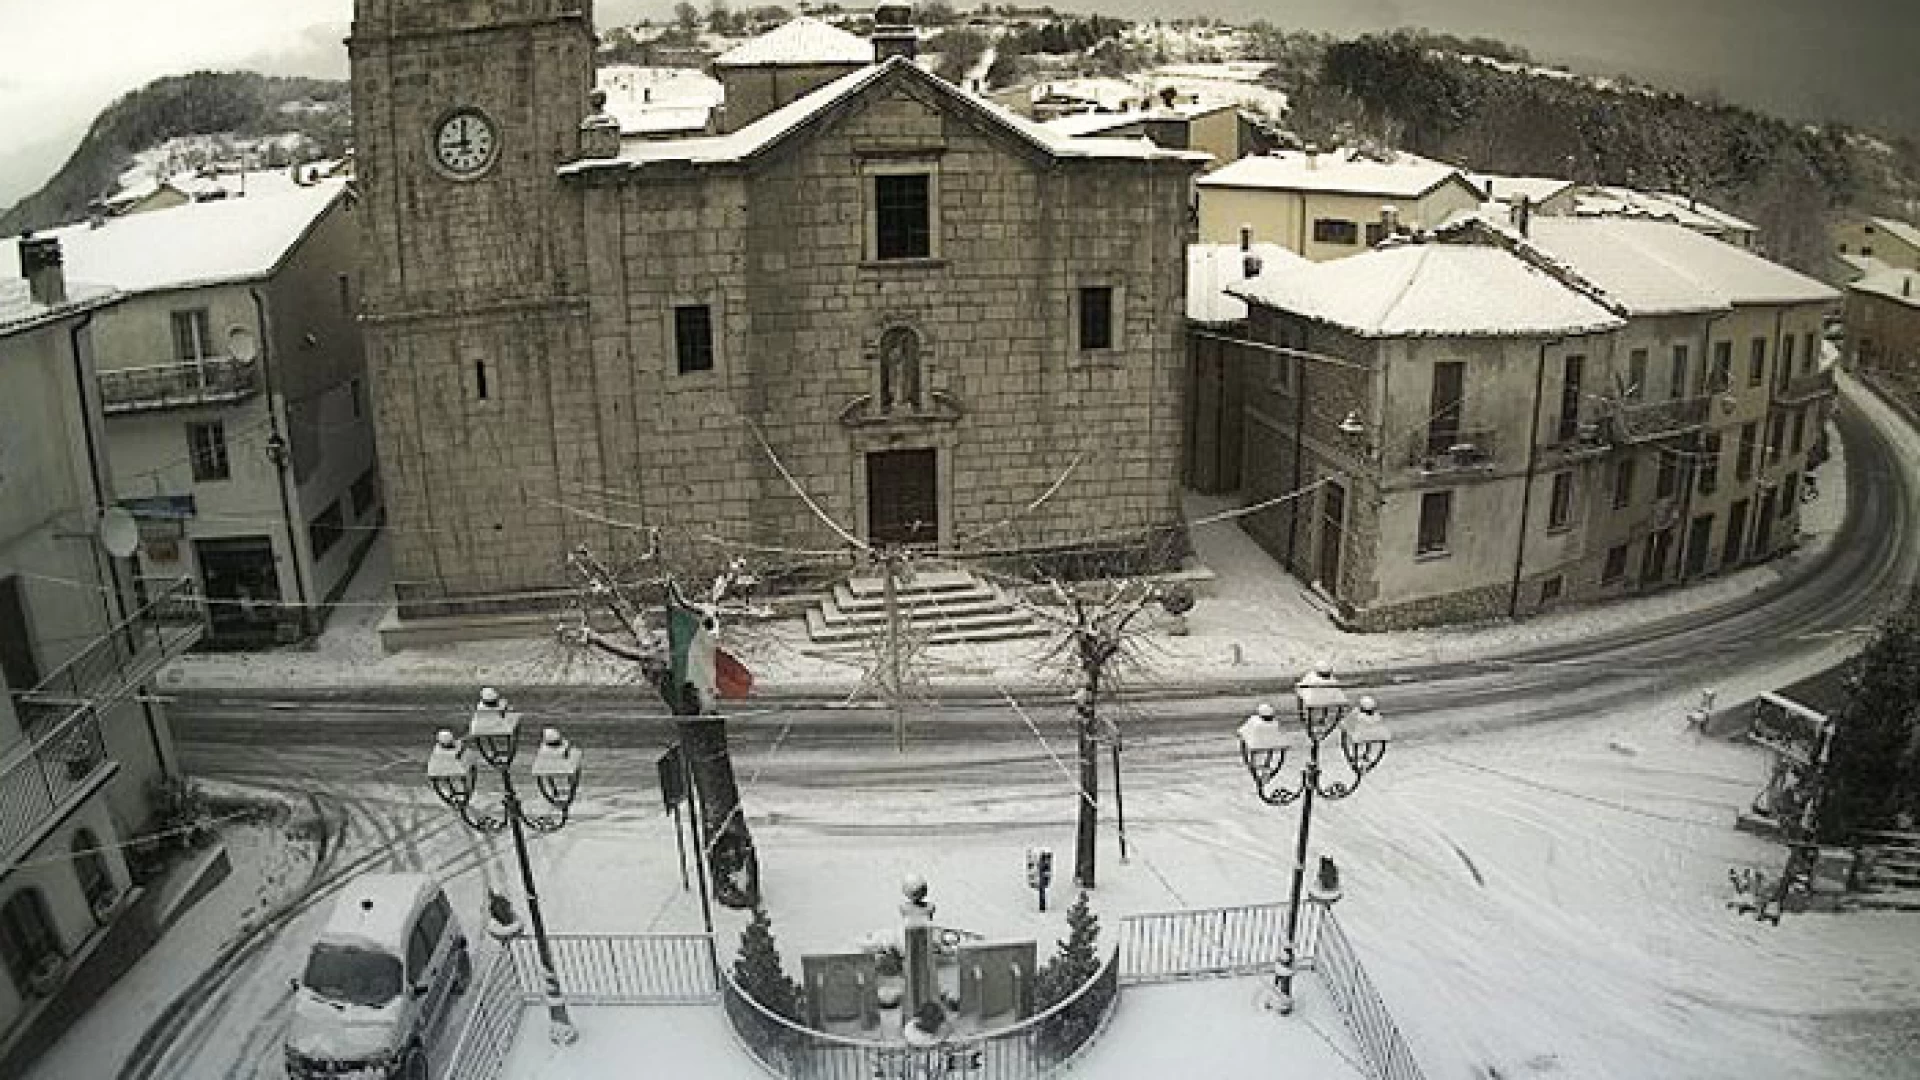 Meteo: la neve cade in Provincia di Isernia e nella Valle del Volturno. Nessuna condizione preoccupante al momento.